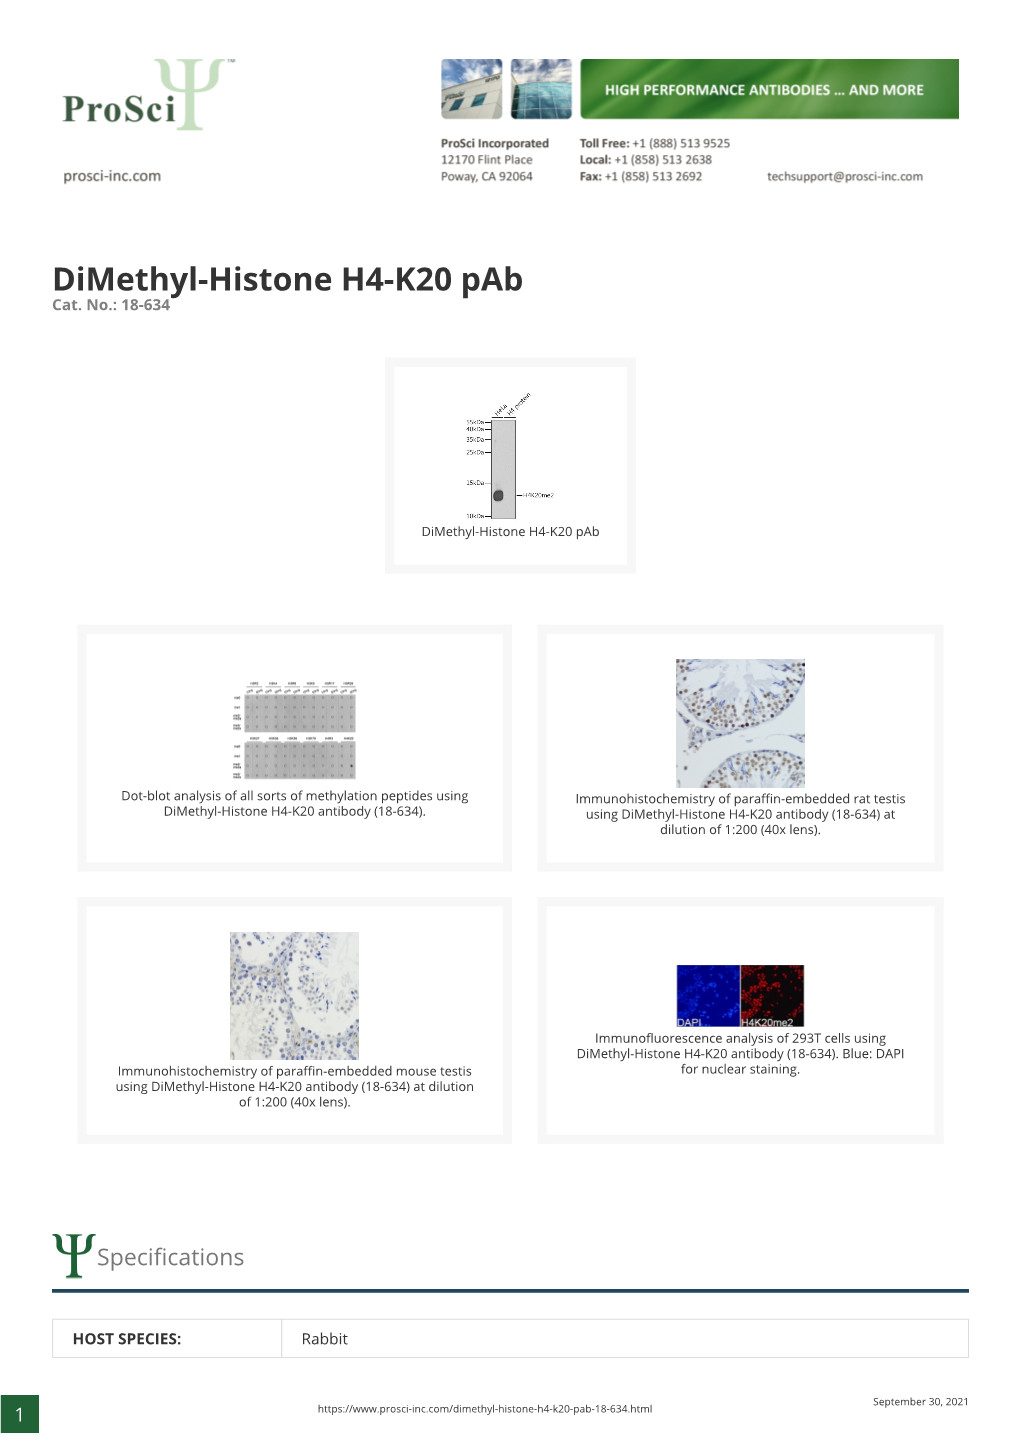 Dimethyl-Histone H4-K20 Pab Cat